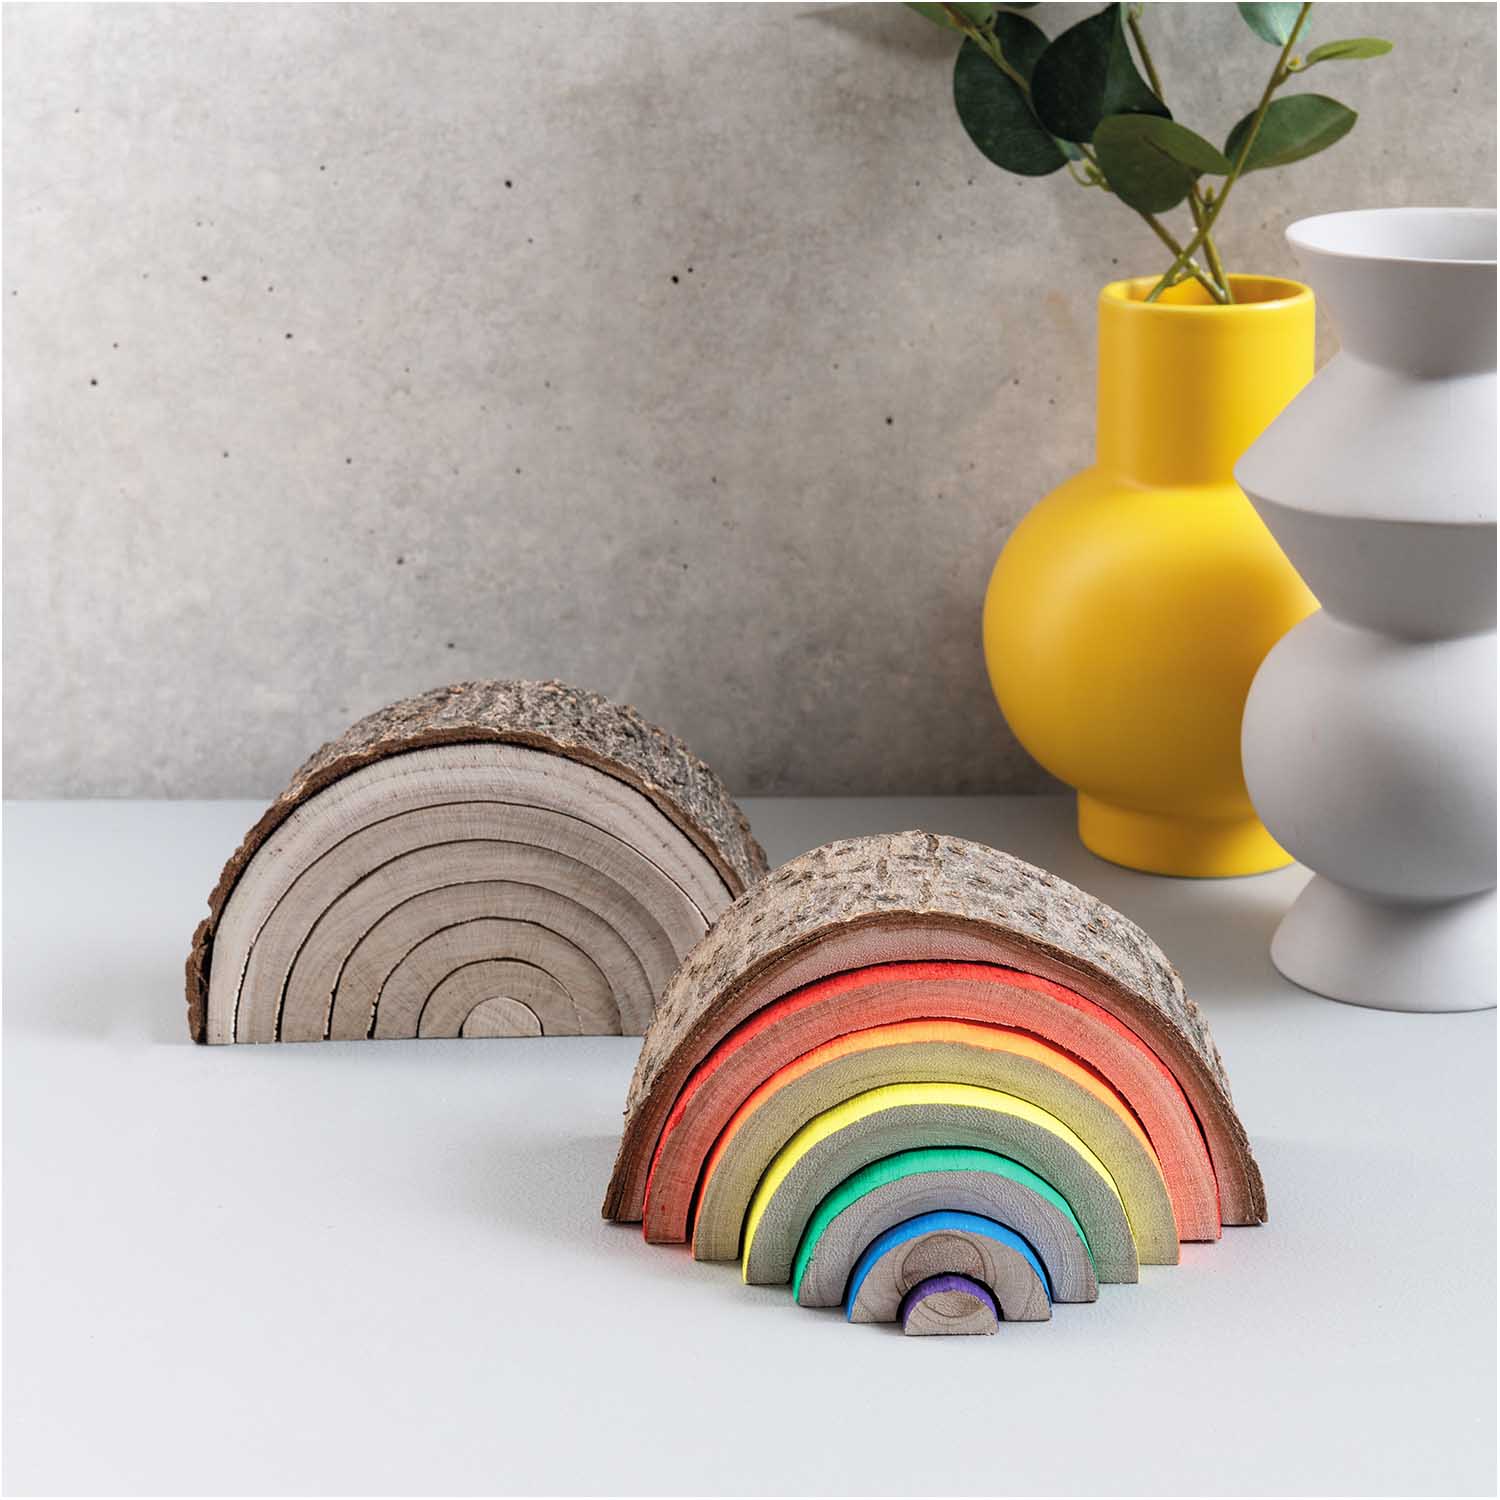 Holz-Regenbogen mit Rinde 14x8x5cm 7-teilig